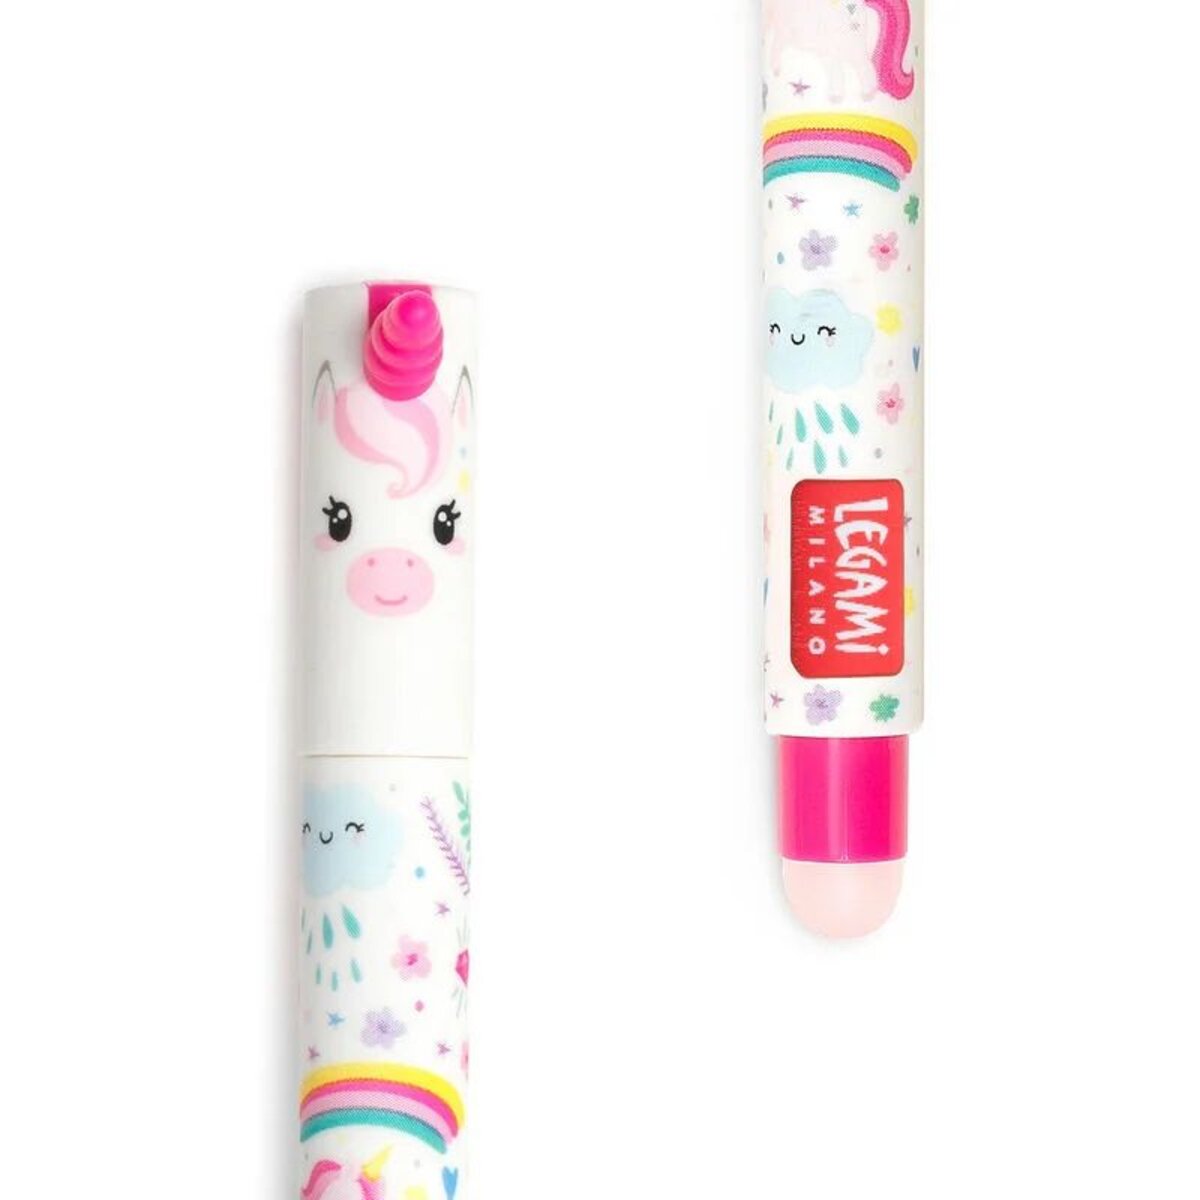 Legami Löschbarer Gelstift - Erasable Pen, rosa Einhorn